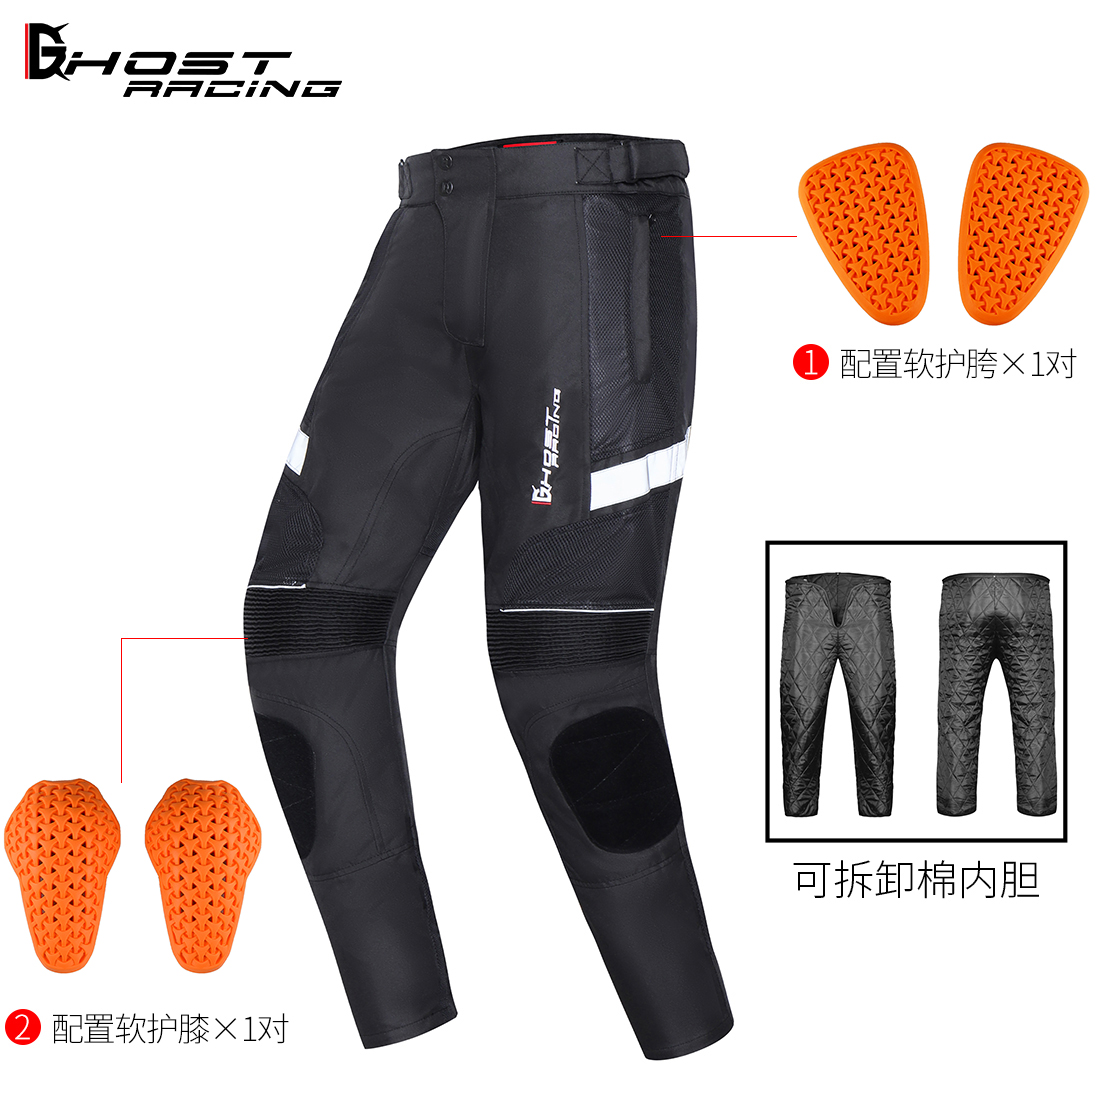 GHOST RACING夏季网裤摩托骑行赛车骑士裤男防摔防护裤透气带护具